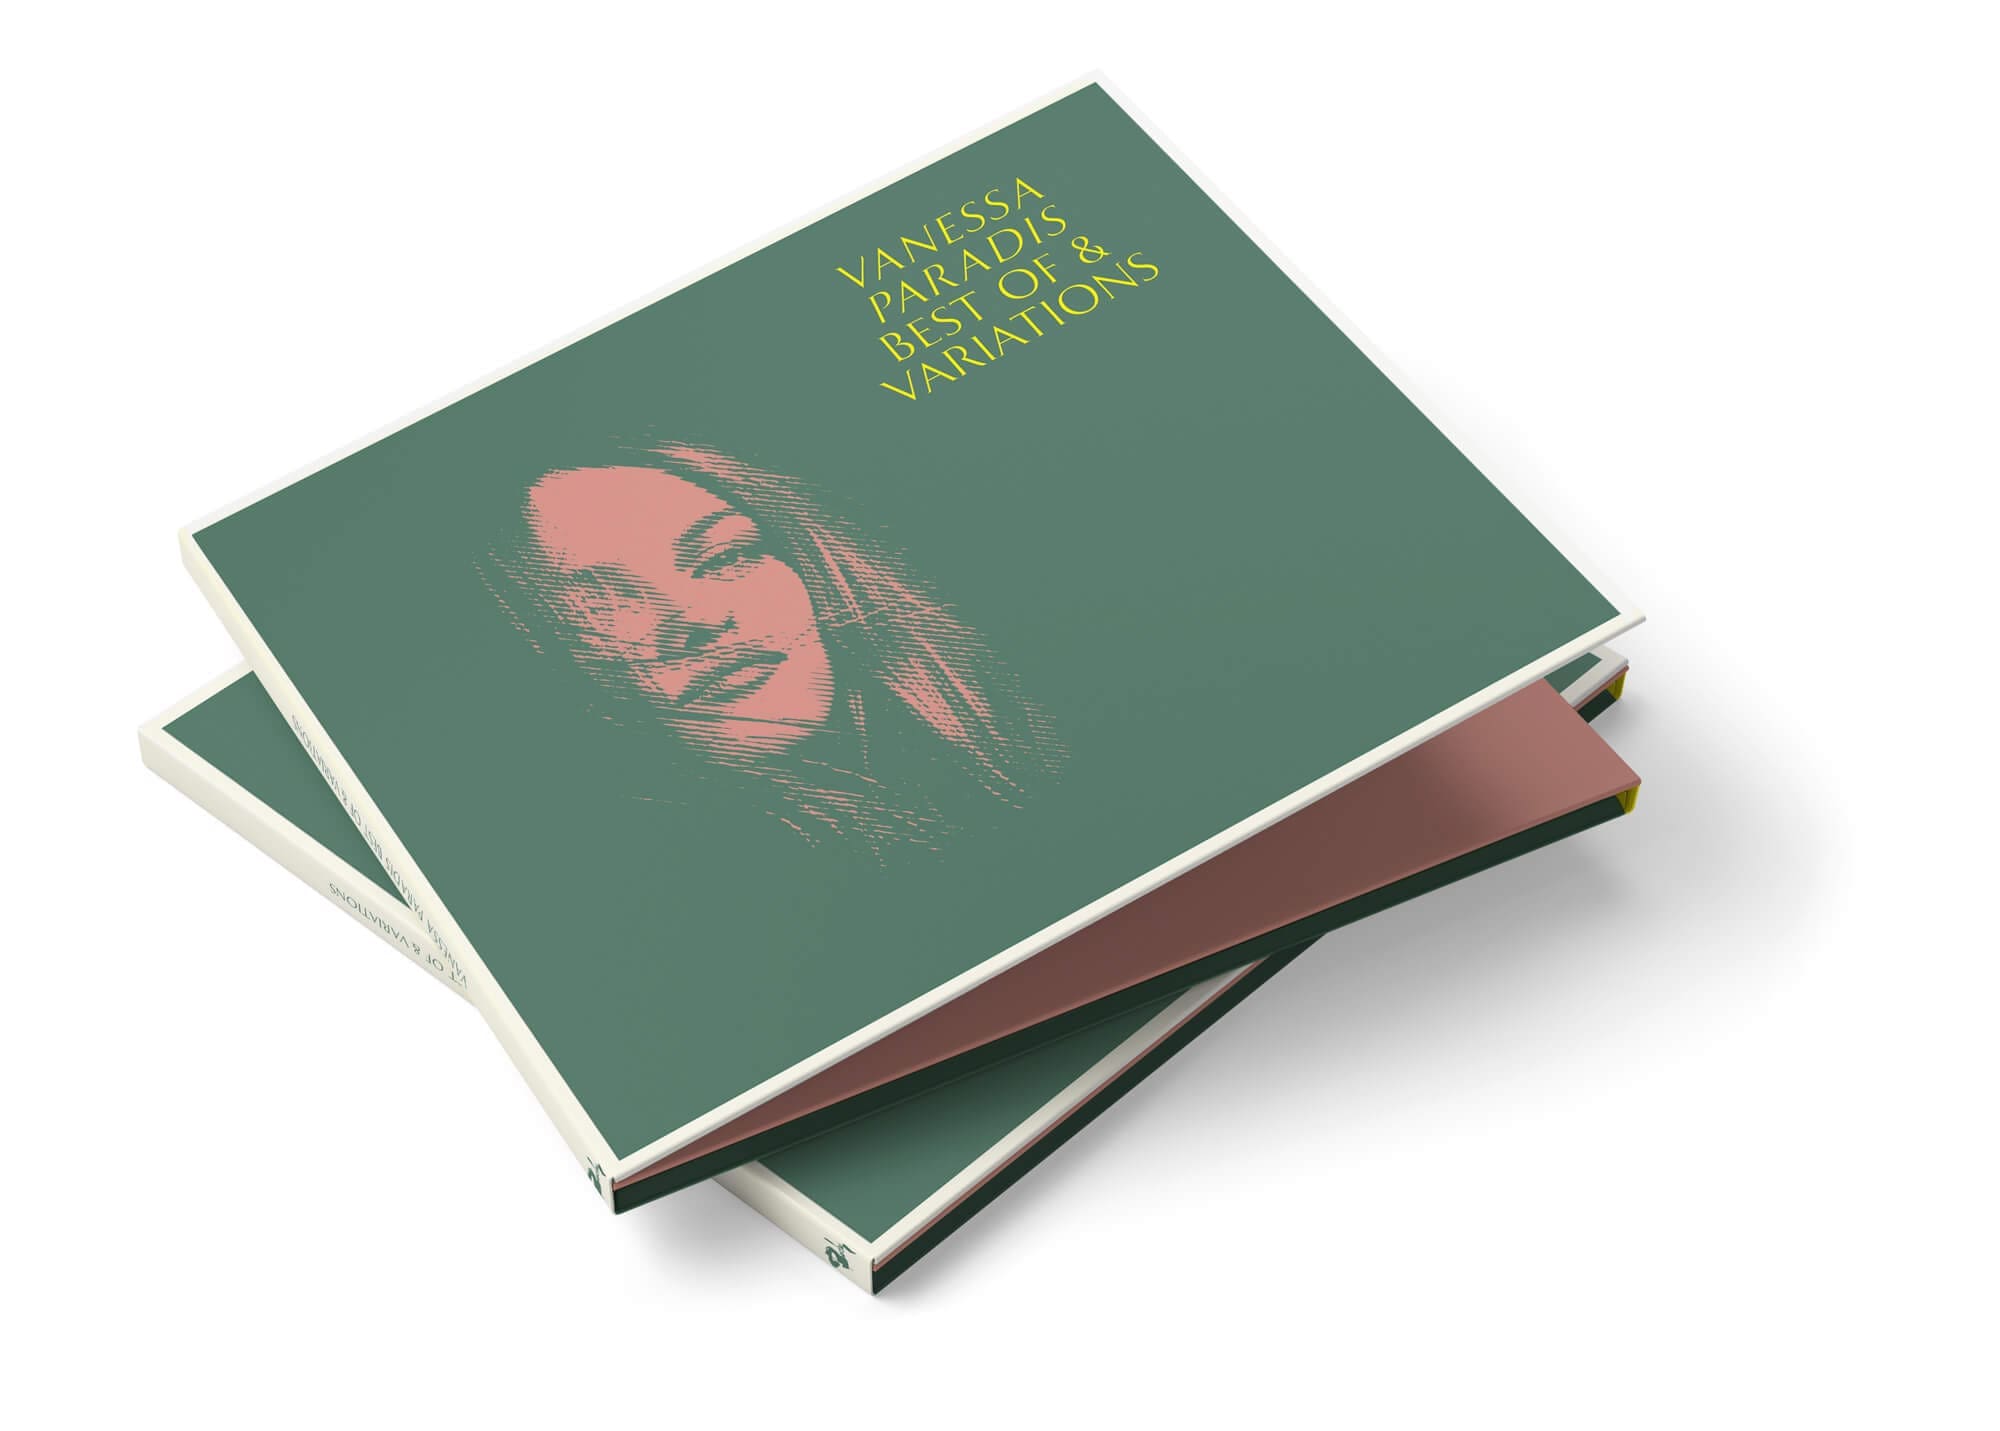 La couverture du double CD best of Vanessa Paradis, design IchetKar